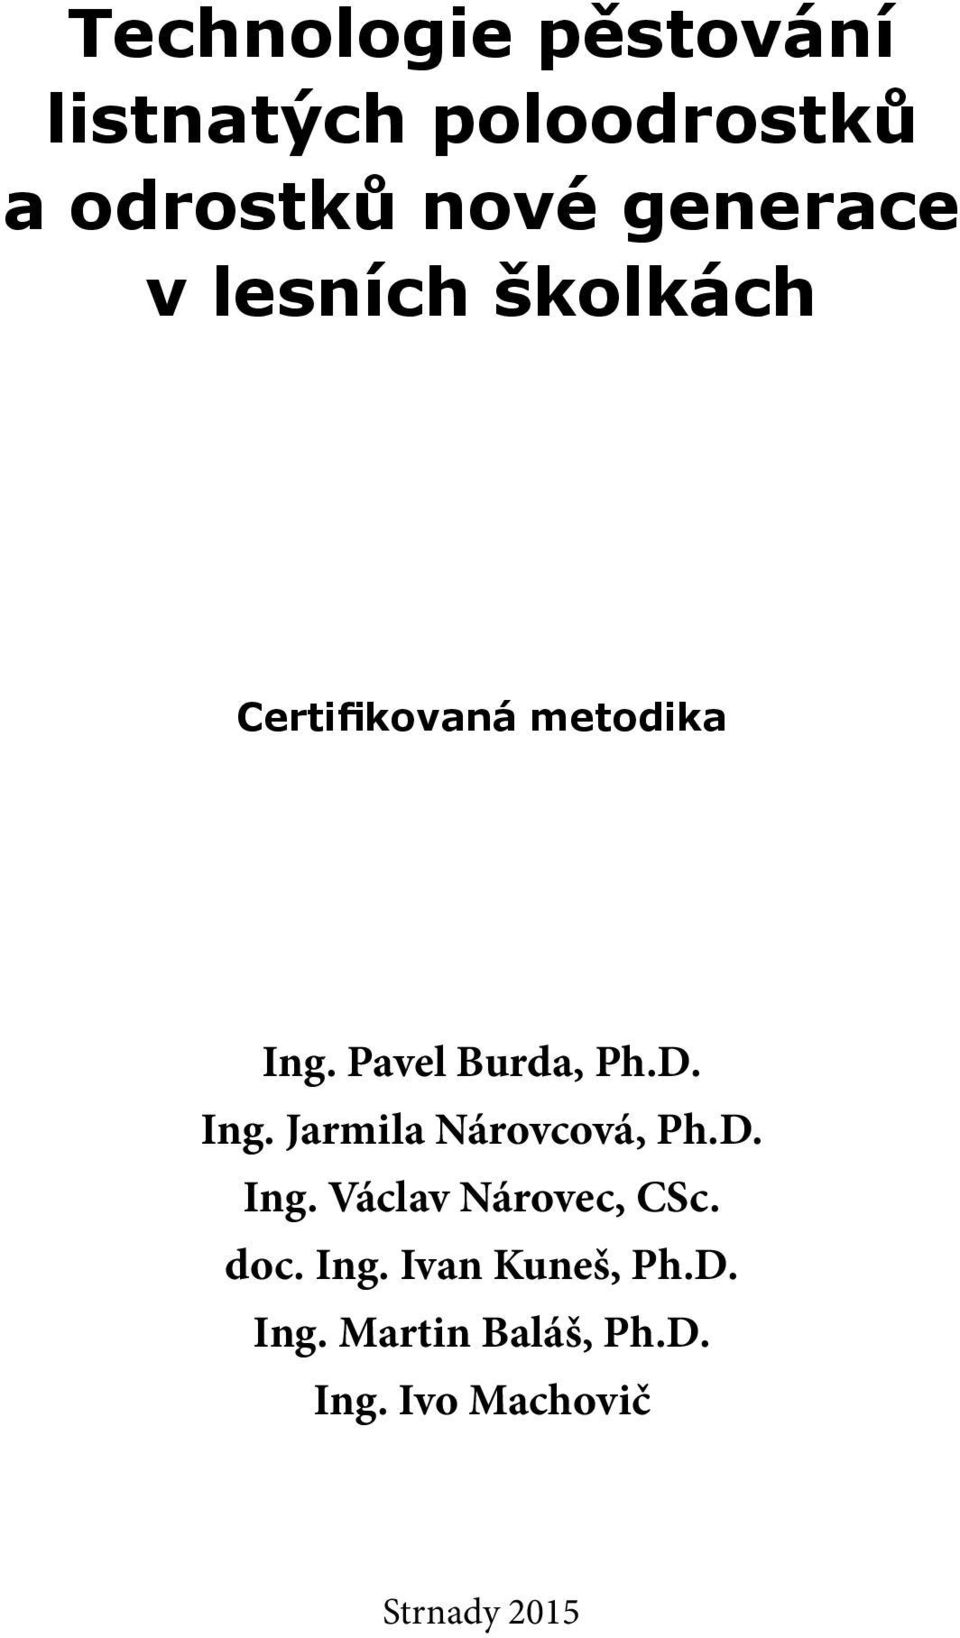 Pavel Burda, Ph.D. Ing. Jarmila Nárovcová, Ph.D. Ing. Václav Nárovec, CSc.